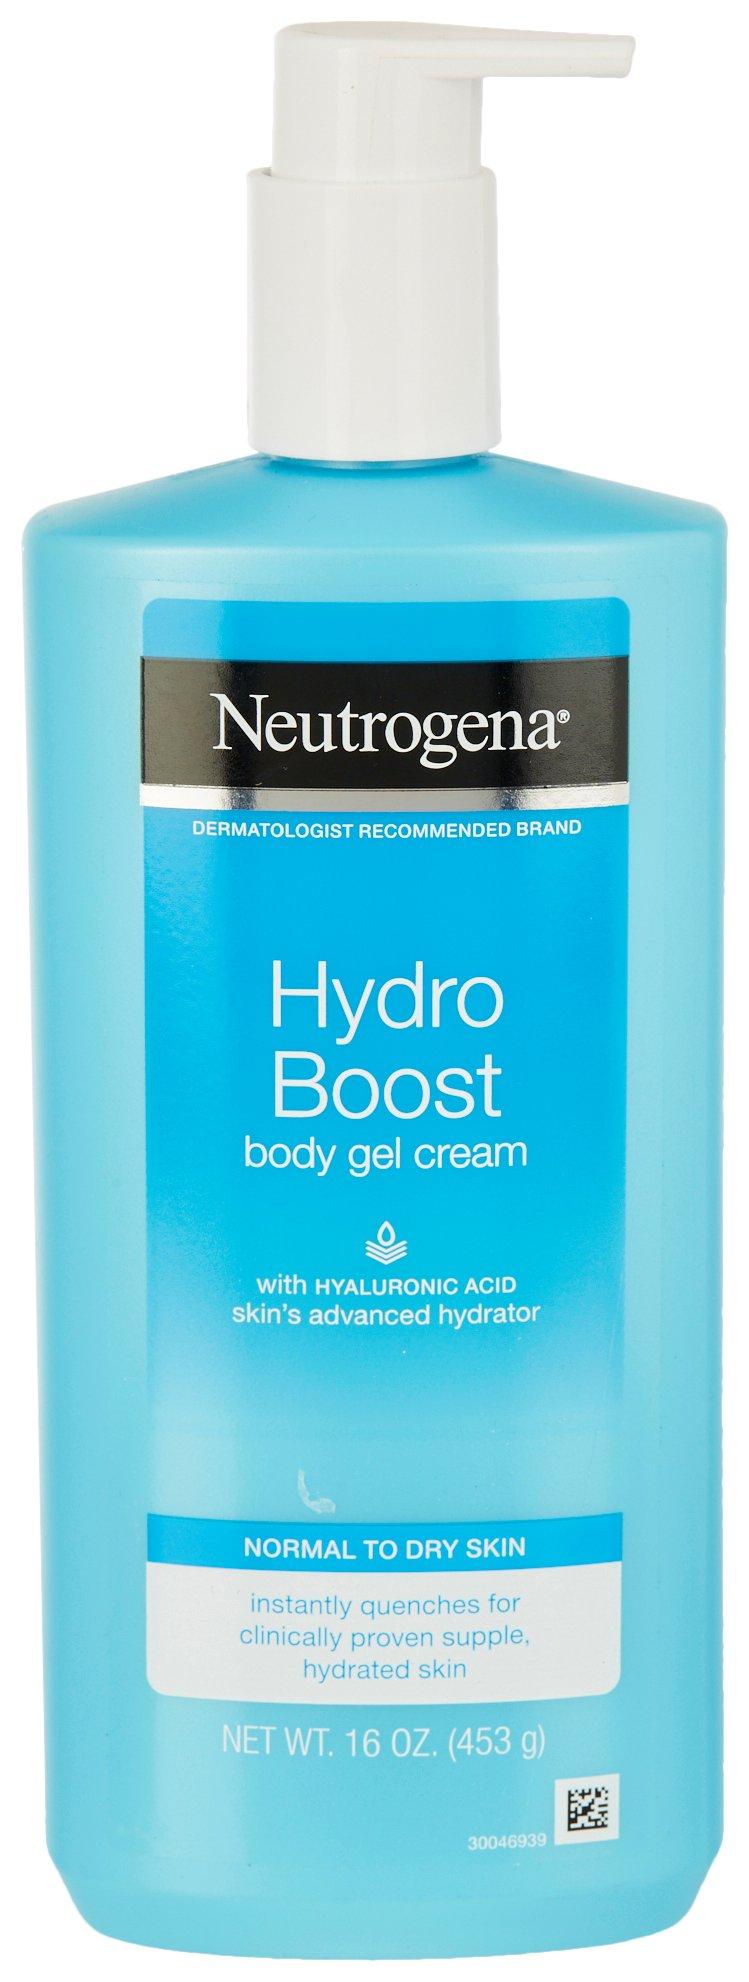 Hydro Boost Hyaluronic Acid Body Gel Cream